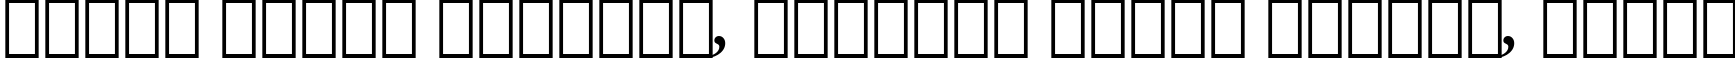 Пример написания шрифтом Galliard Bold Italic BT текста на белорусском